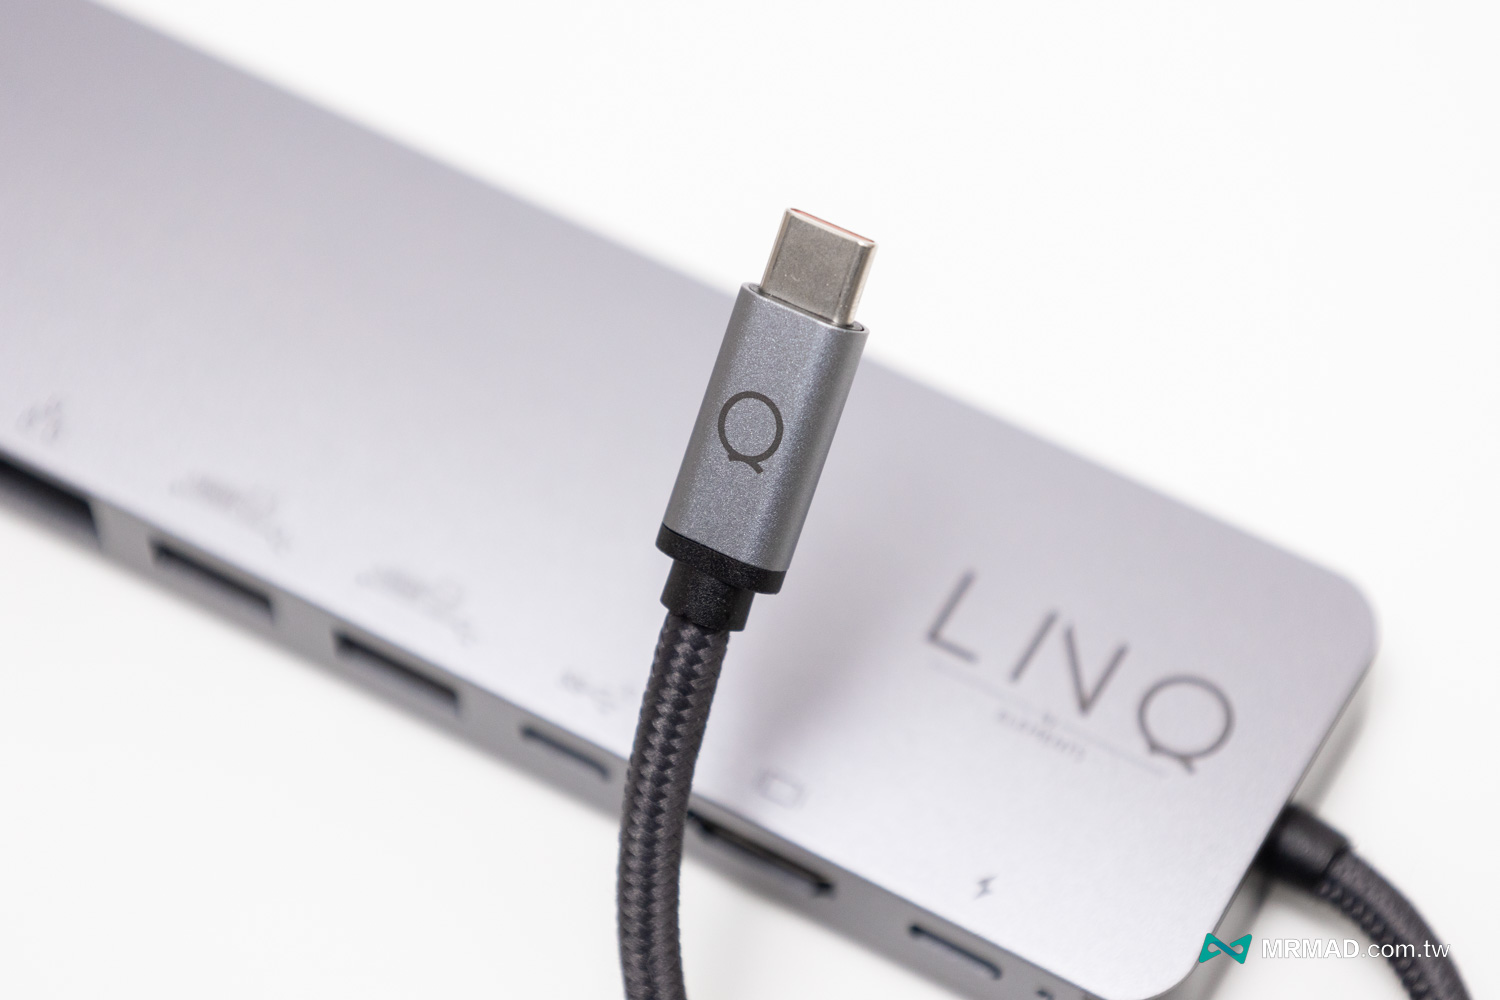 丹麥LINQ 9合1 SSD Pro Studio Hub 集線器開箱8